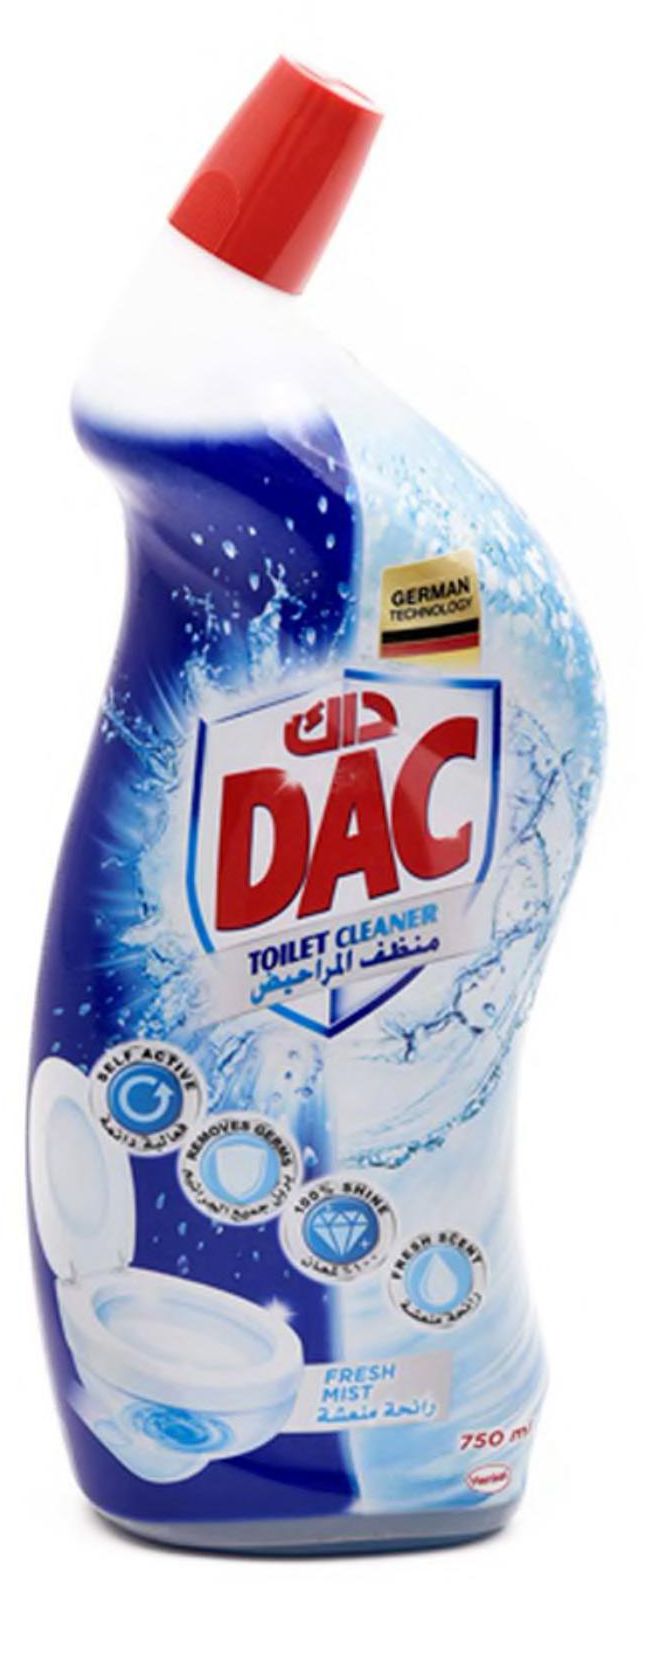 Dac toilet cleaner fresh mist 750 ml